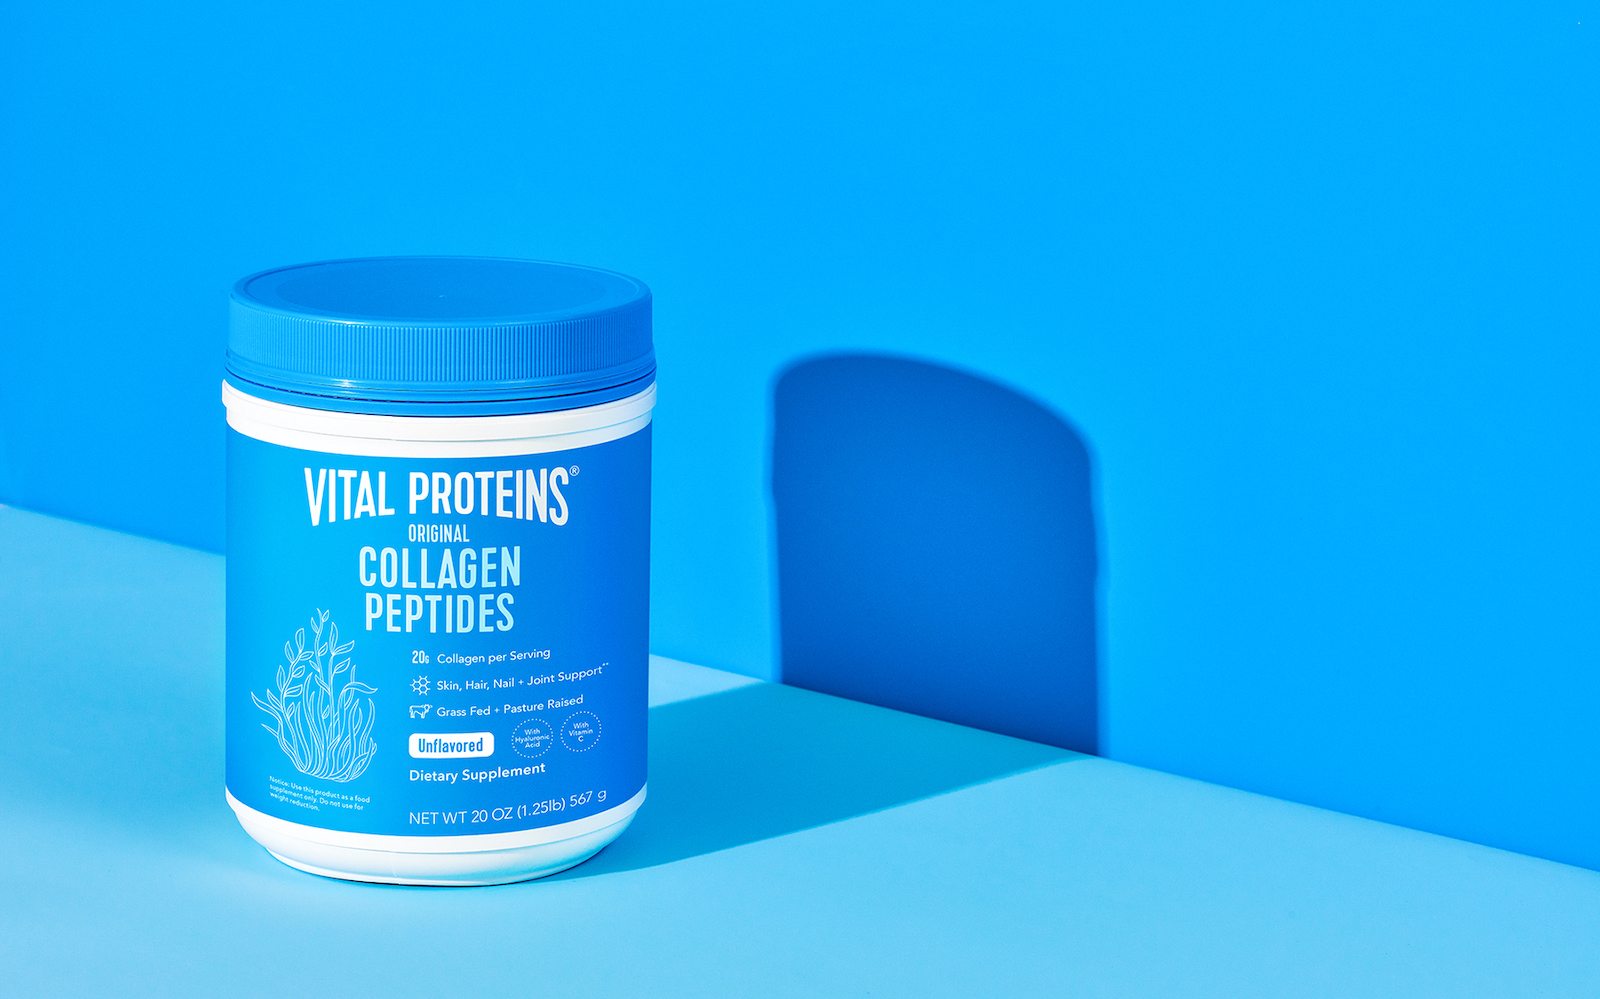 雀巢旗下胶原蛋白补剂品牌「Vital Proteins」正式进入中国市场